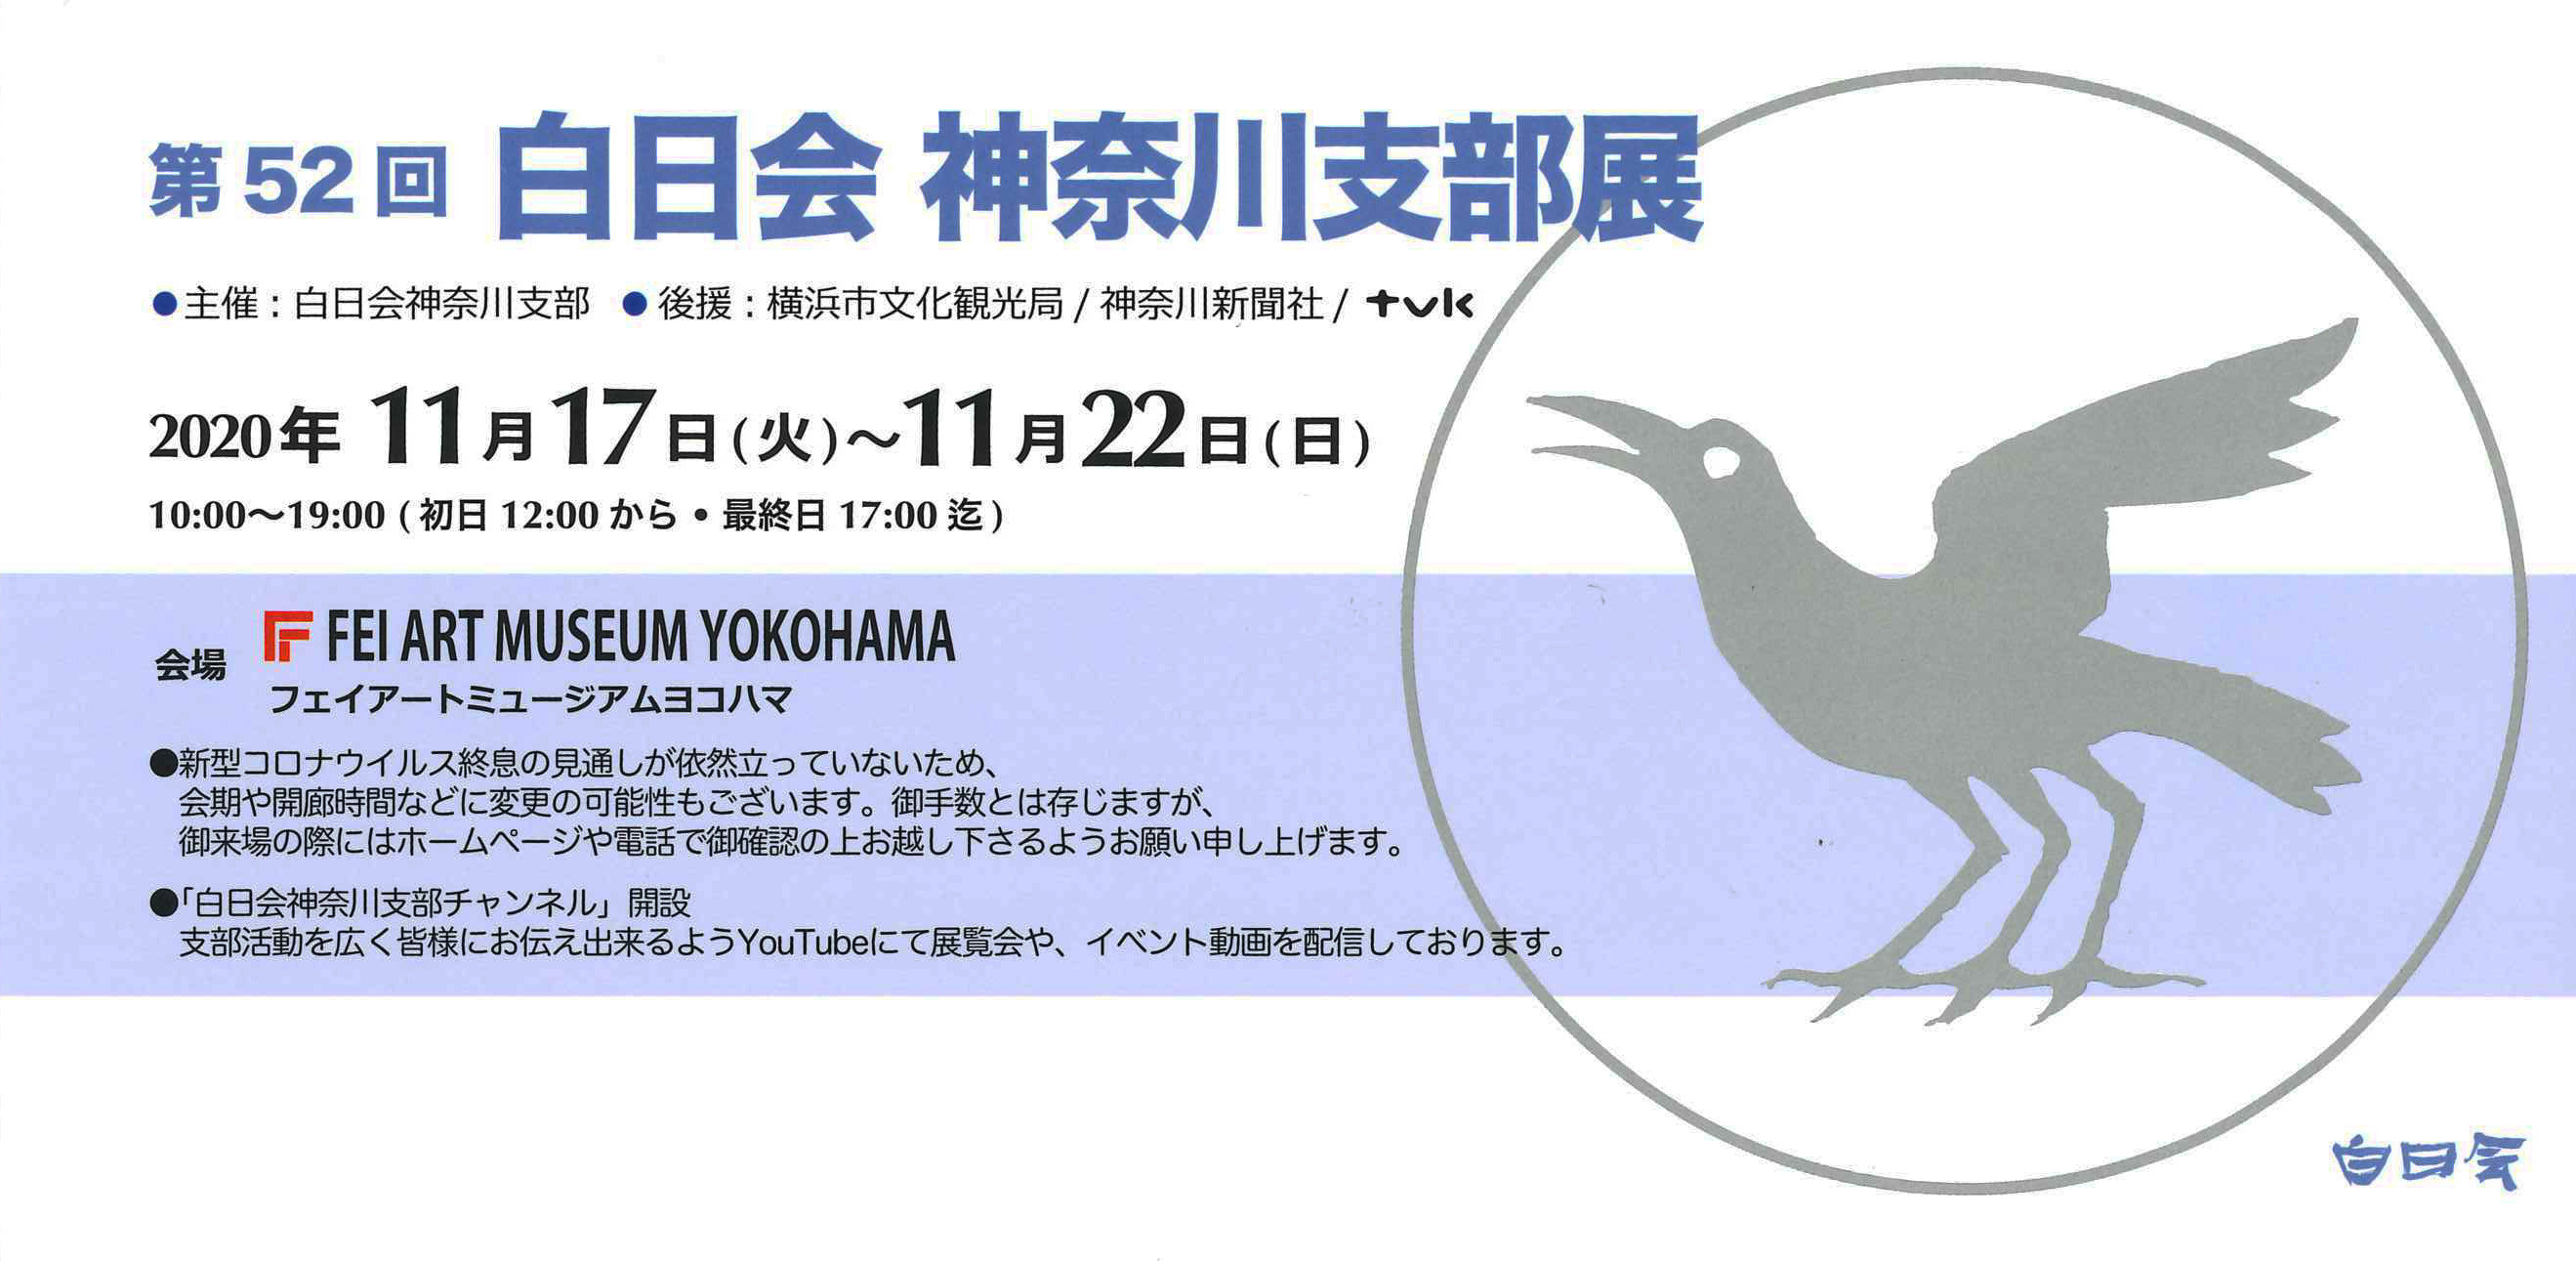 第52回 白日会神奈川支部記念展 -FEI ART MUSEUM YOKOHAMA-